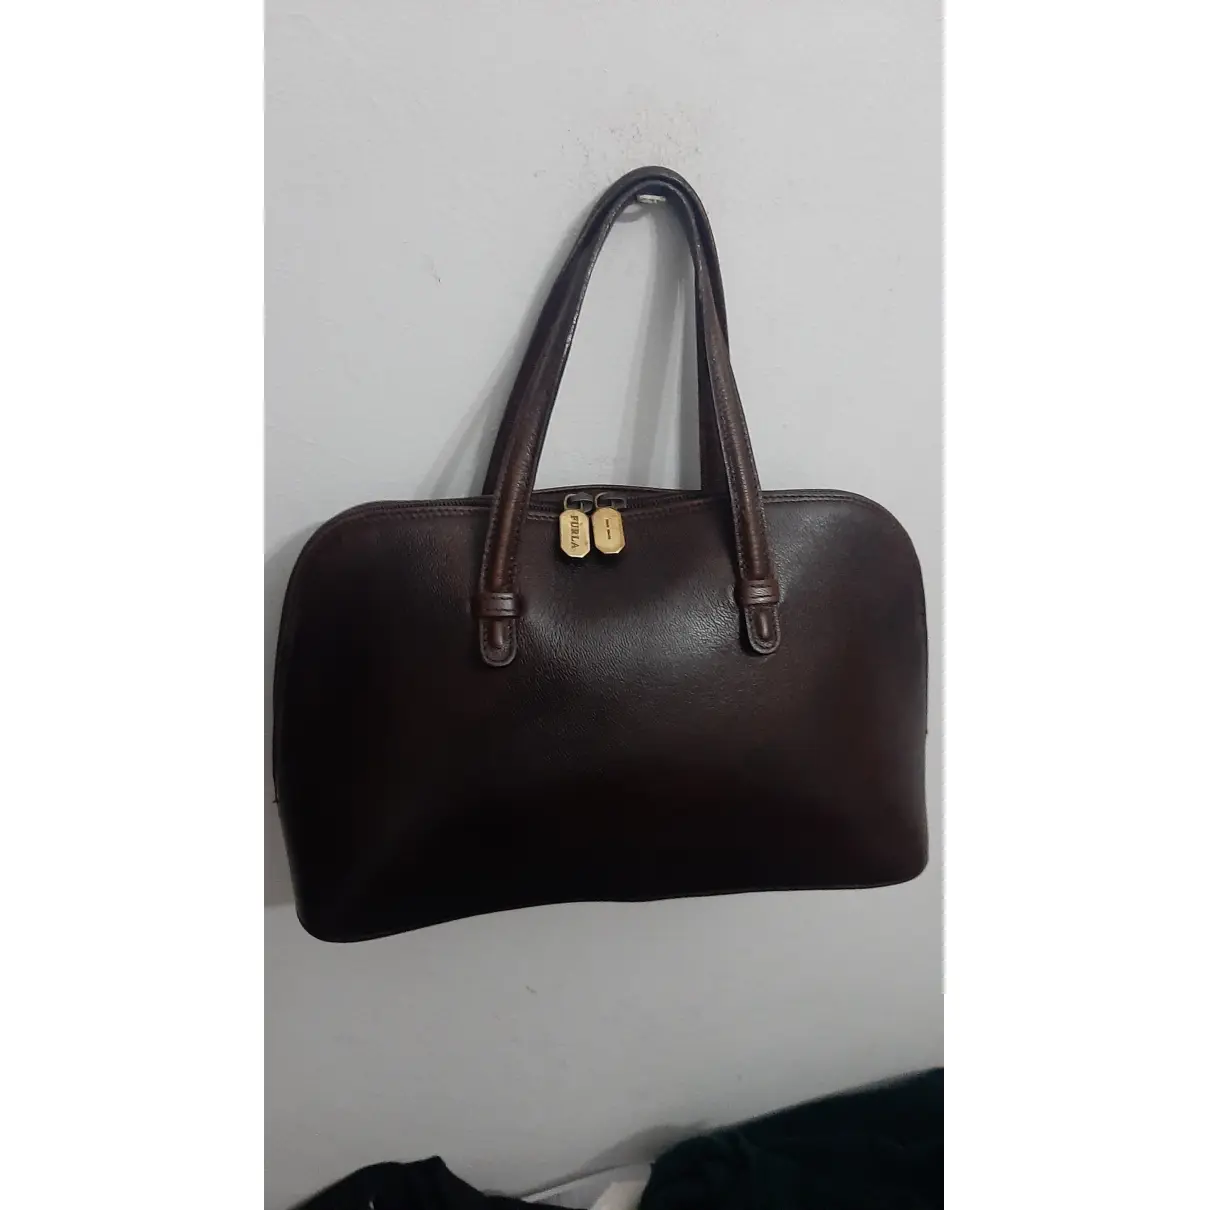 Buy Furla Leather bag online